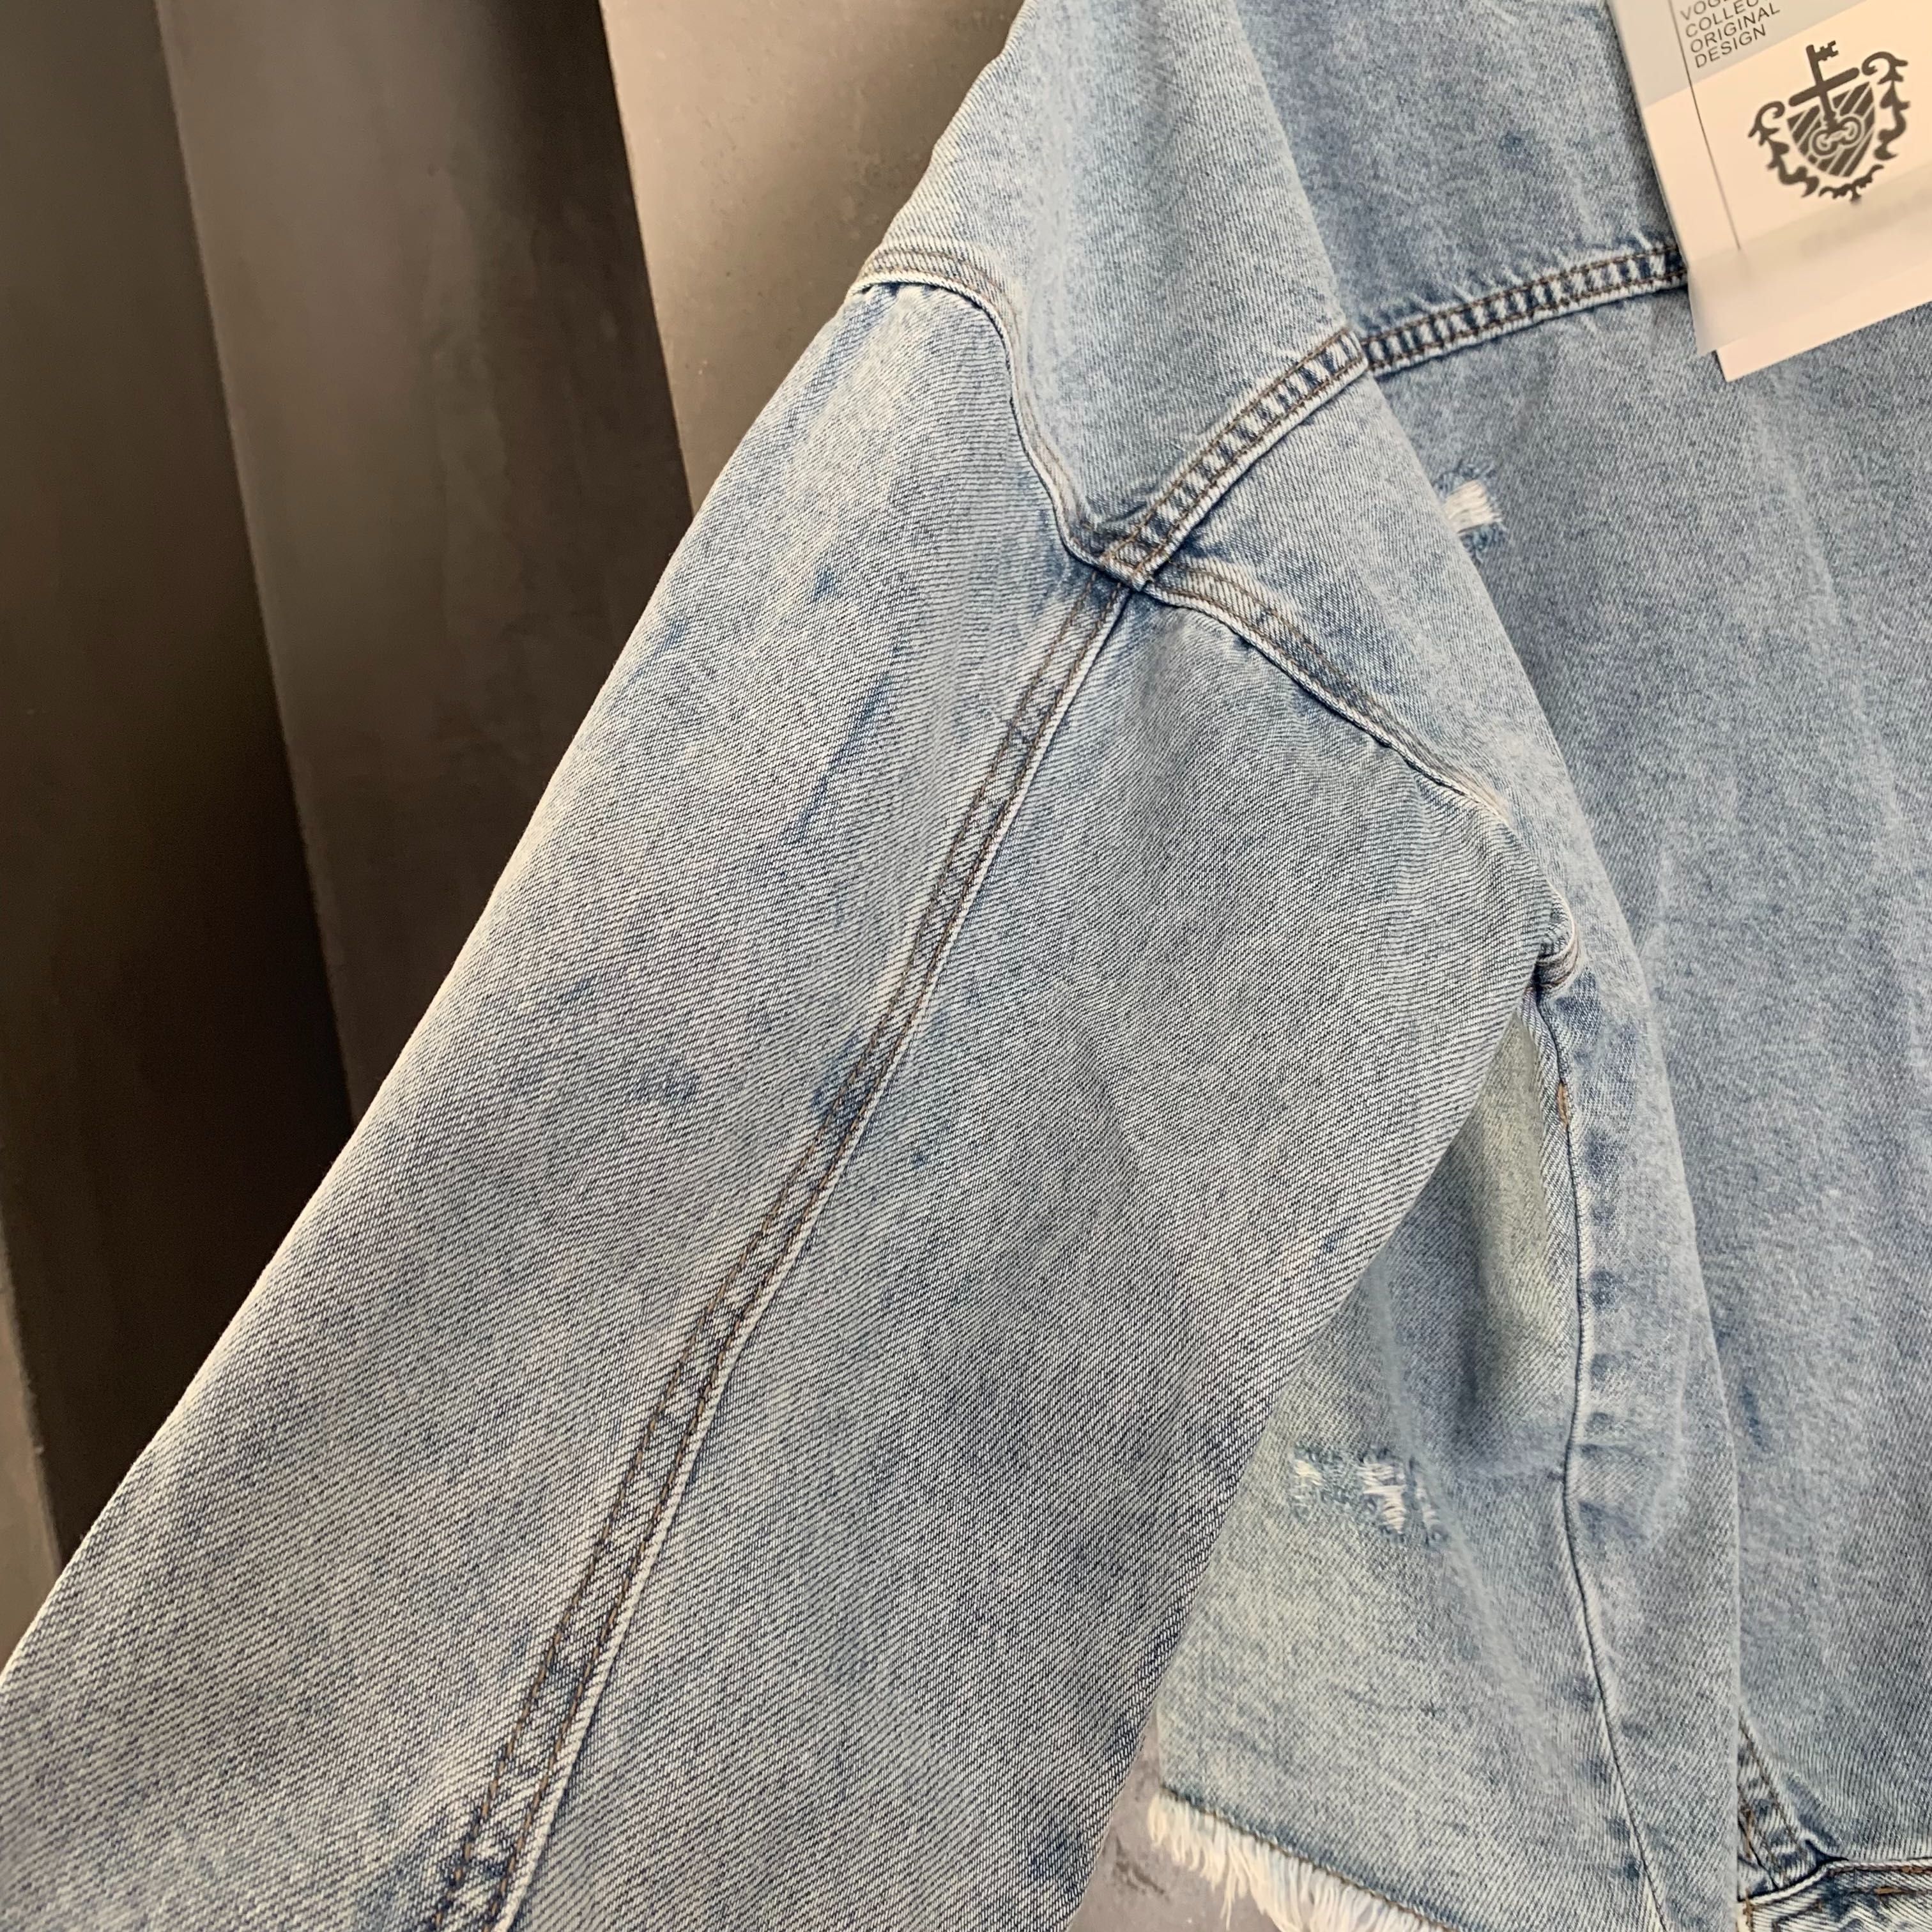 Nowa katana / kurtka jeansowa L/XL
Z przetarciami kupiona w varlesca